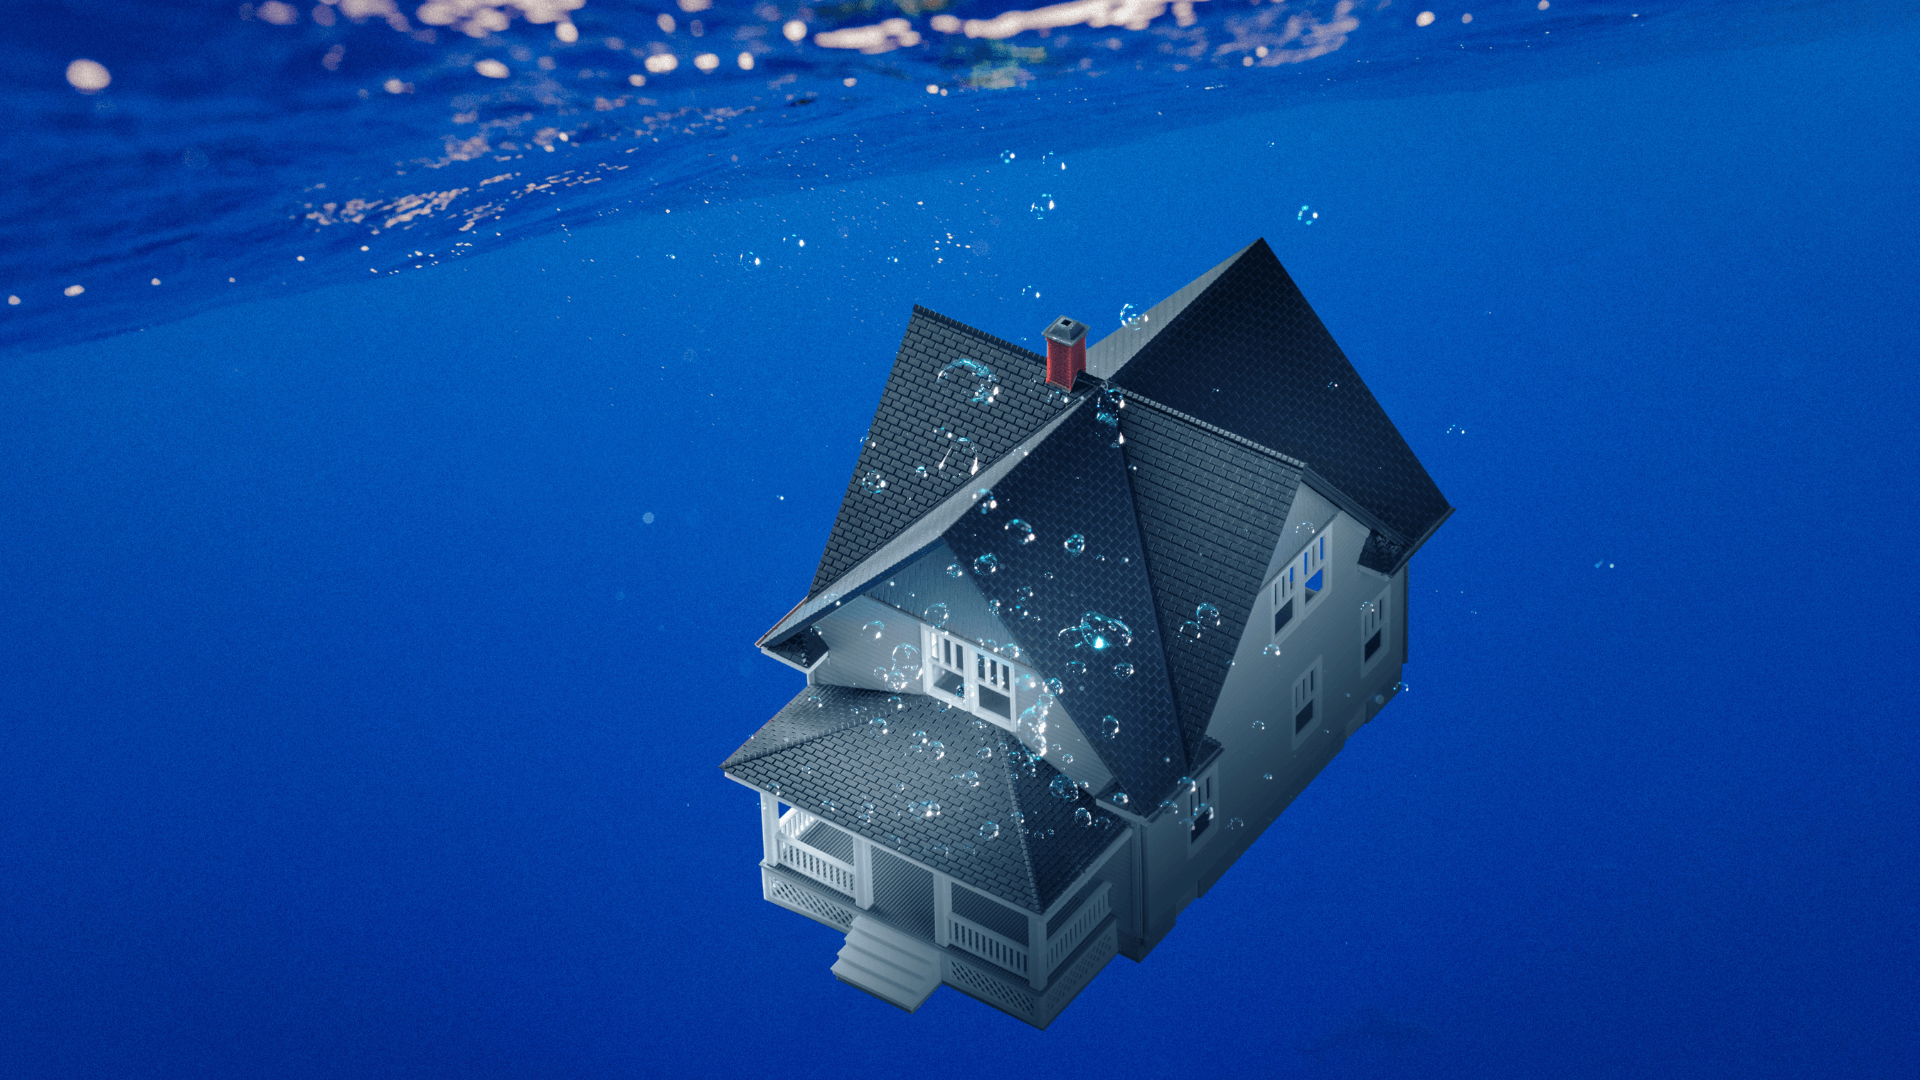 Ein Unterwasserhaus inmitten eines Korallenriffs, umgeben von bunten Fischen, repräsentiert die faszinierende Welt der Unterwasserimmobilien und ihrer einzigartigen Architektur.